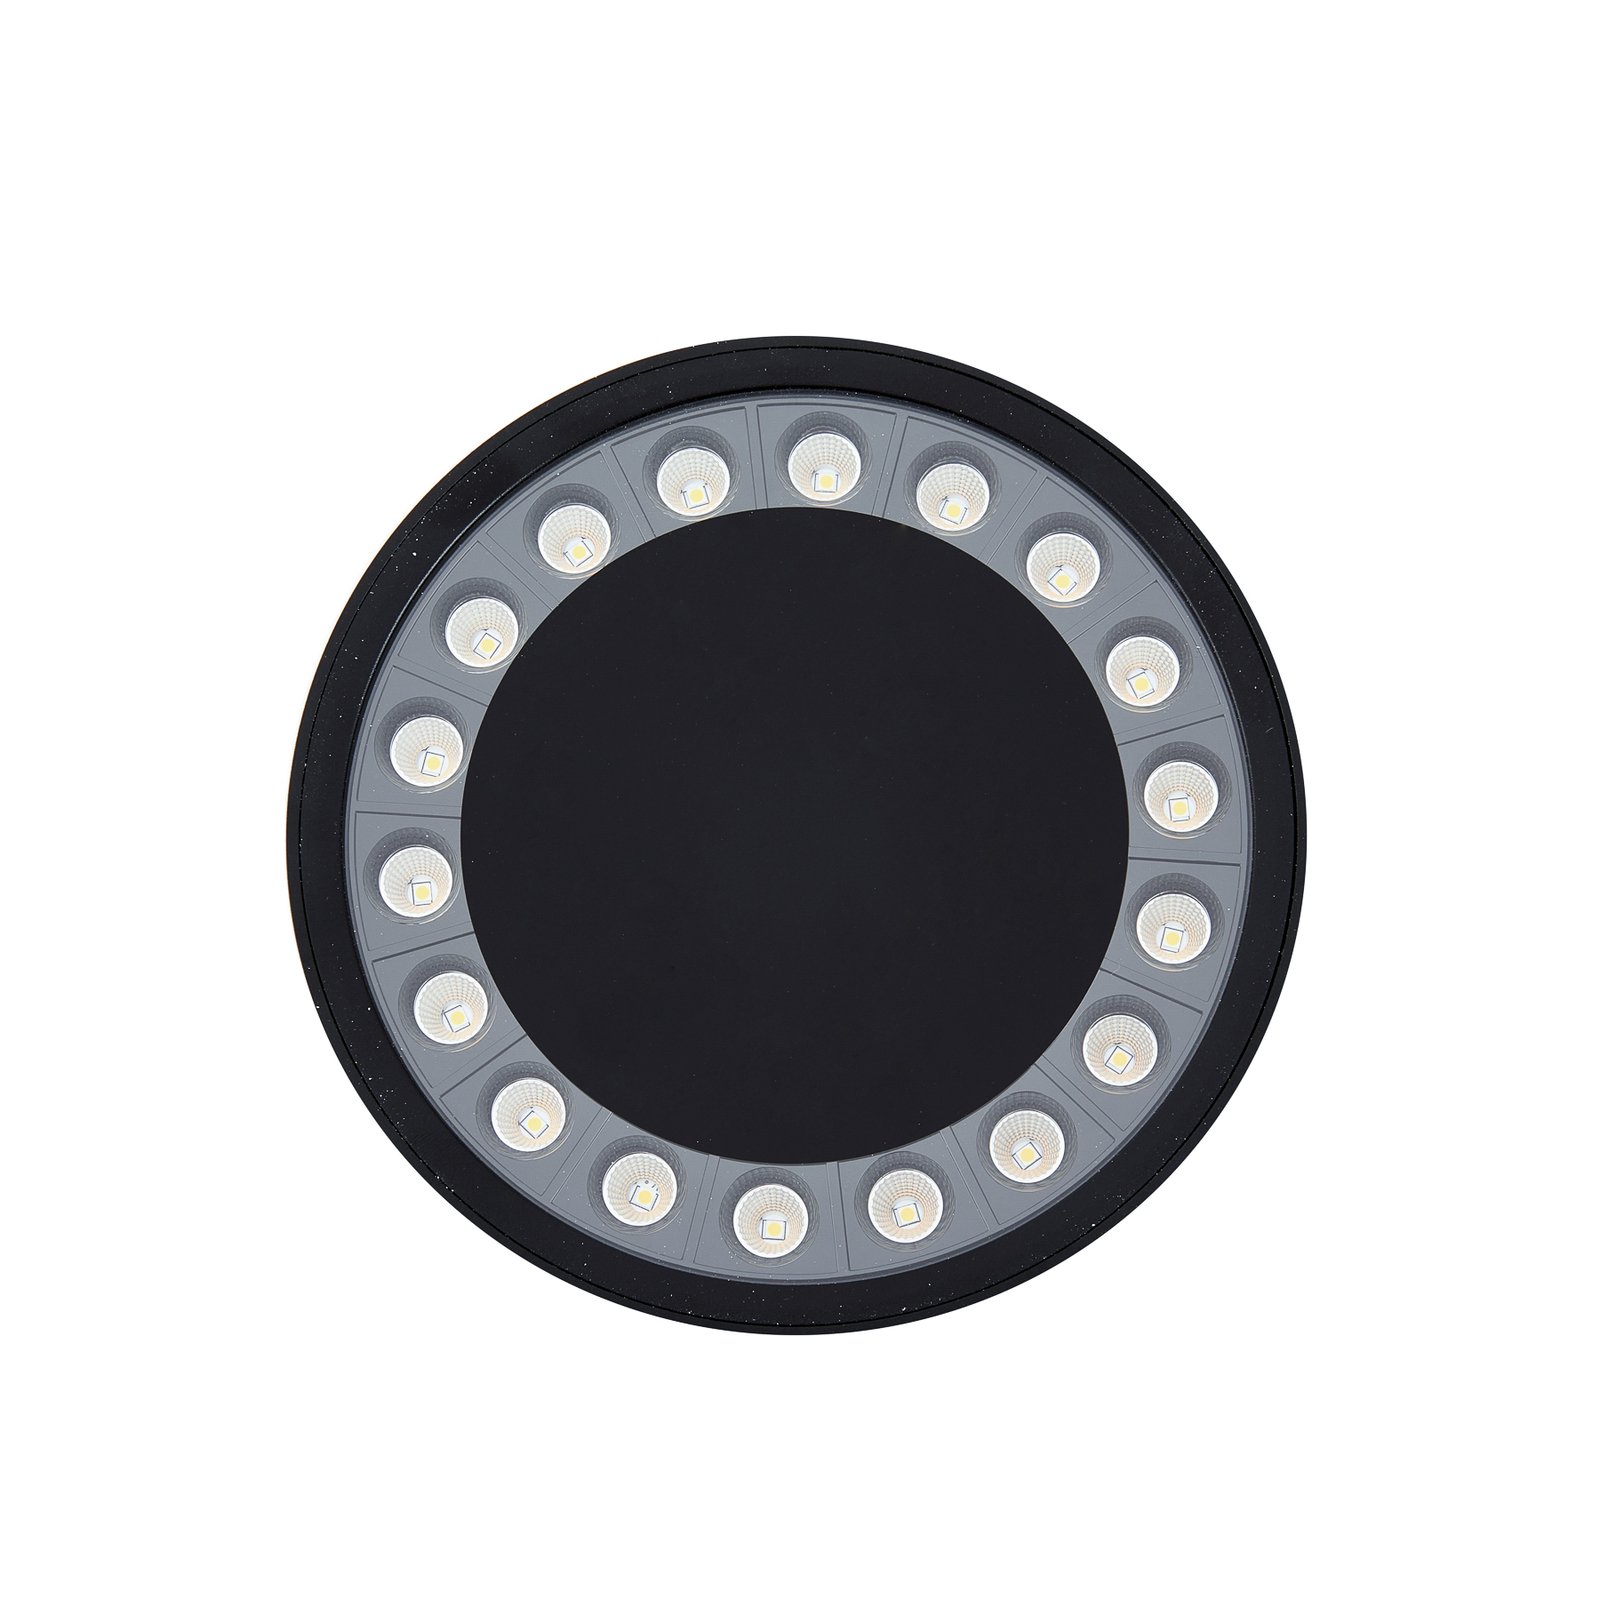 Venkovní stropní svítidlo Lucande LED Roran, černé, Ø 18 cm, IP65